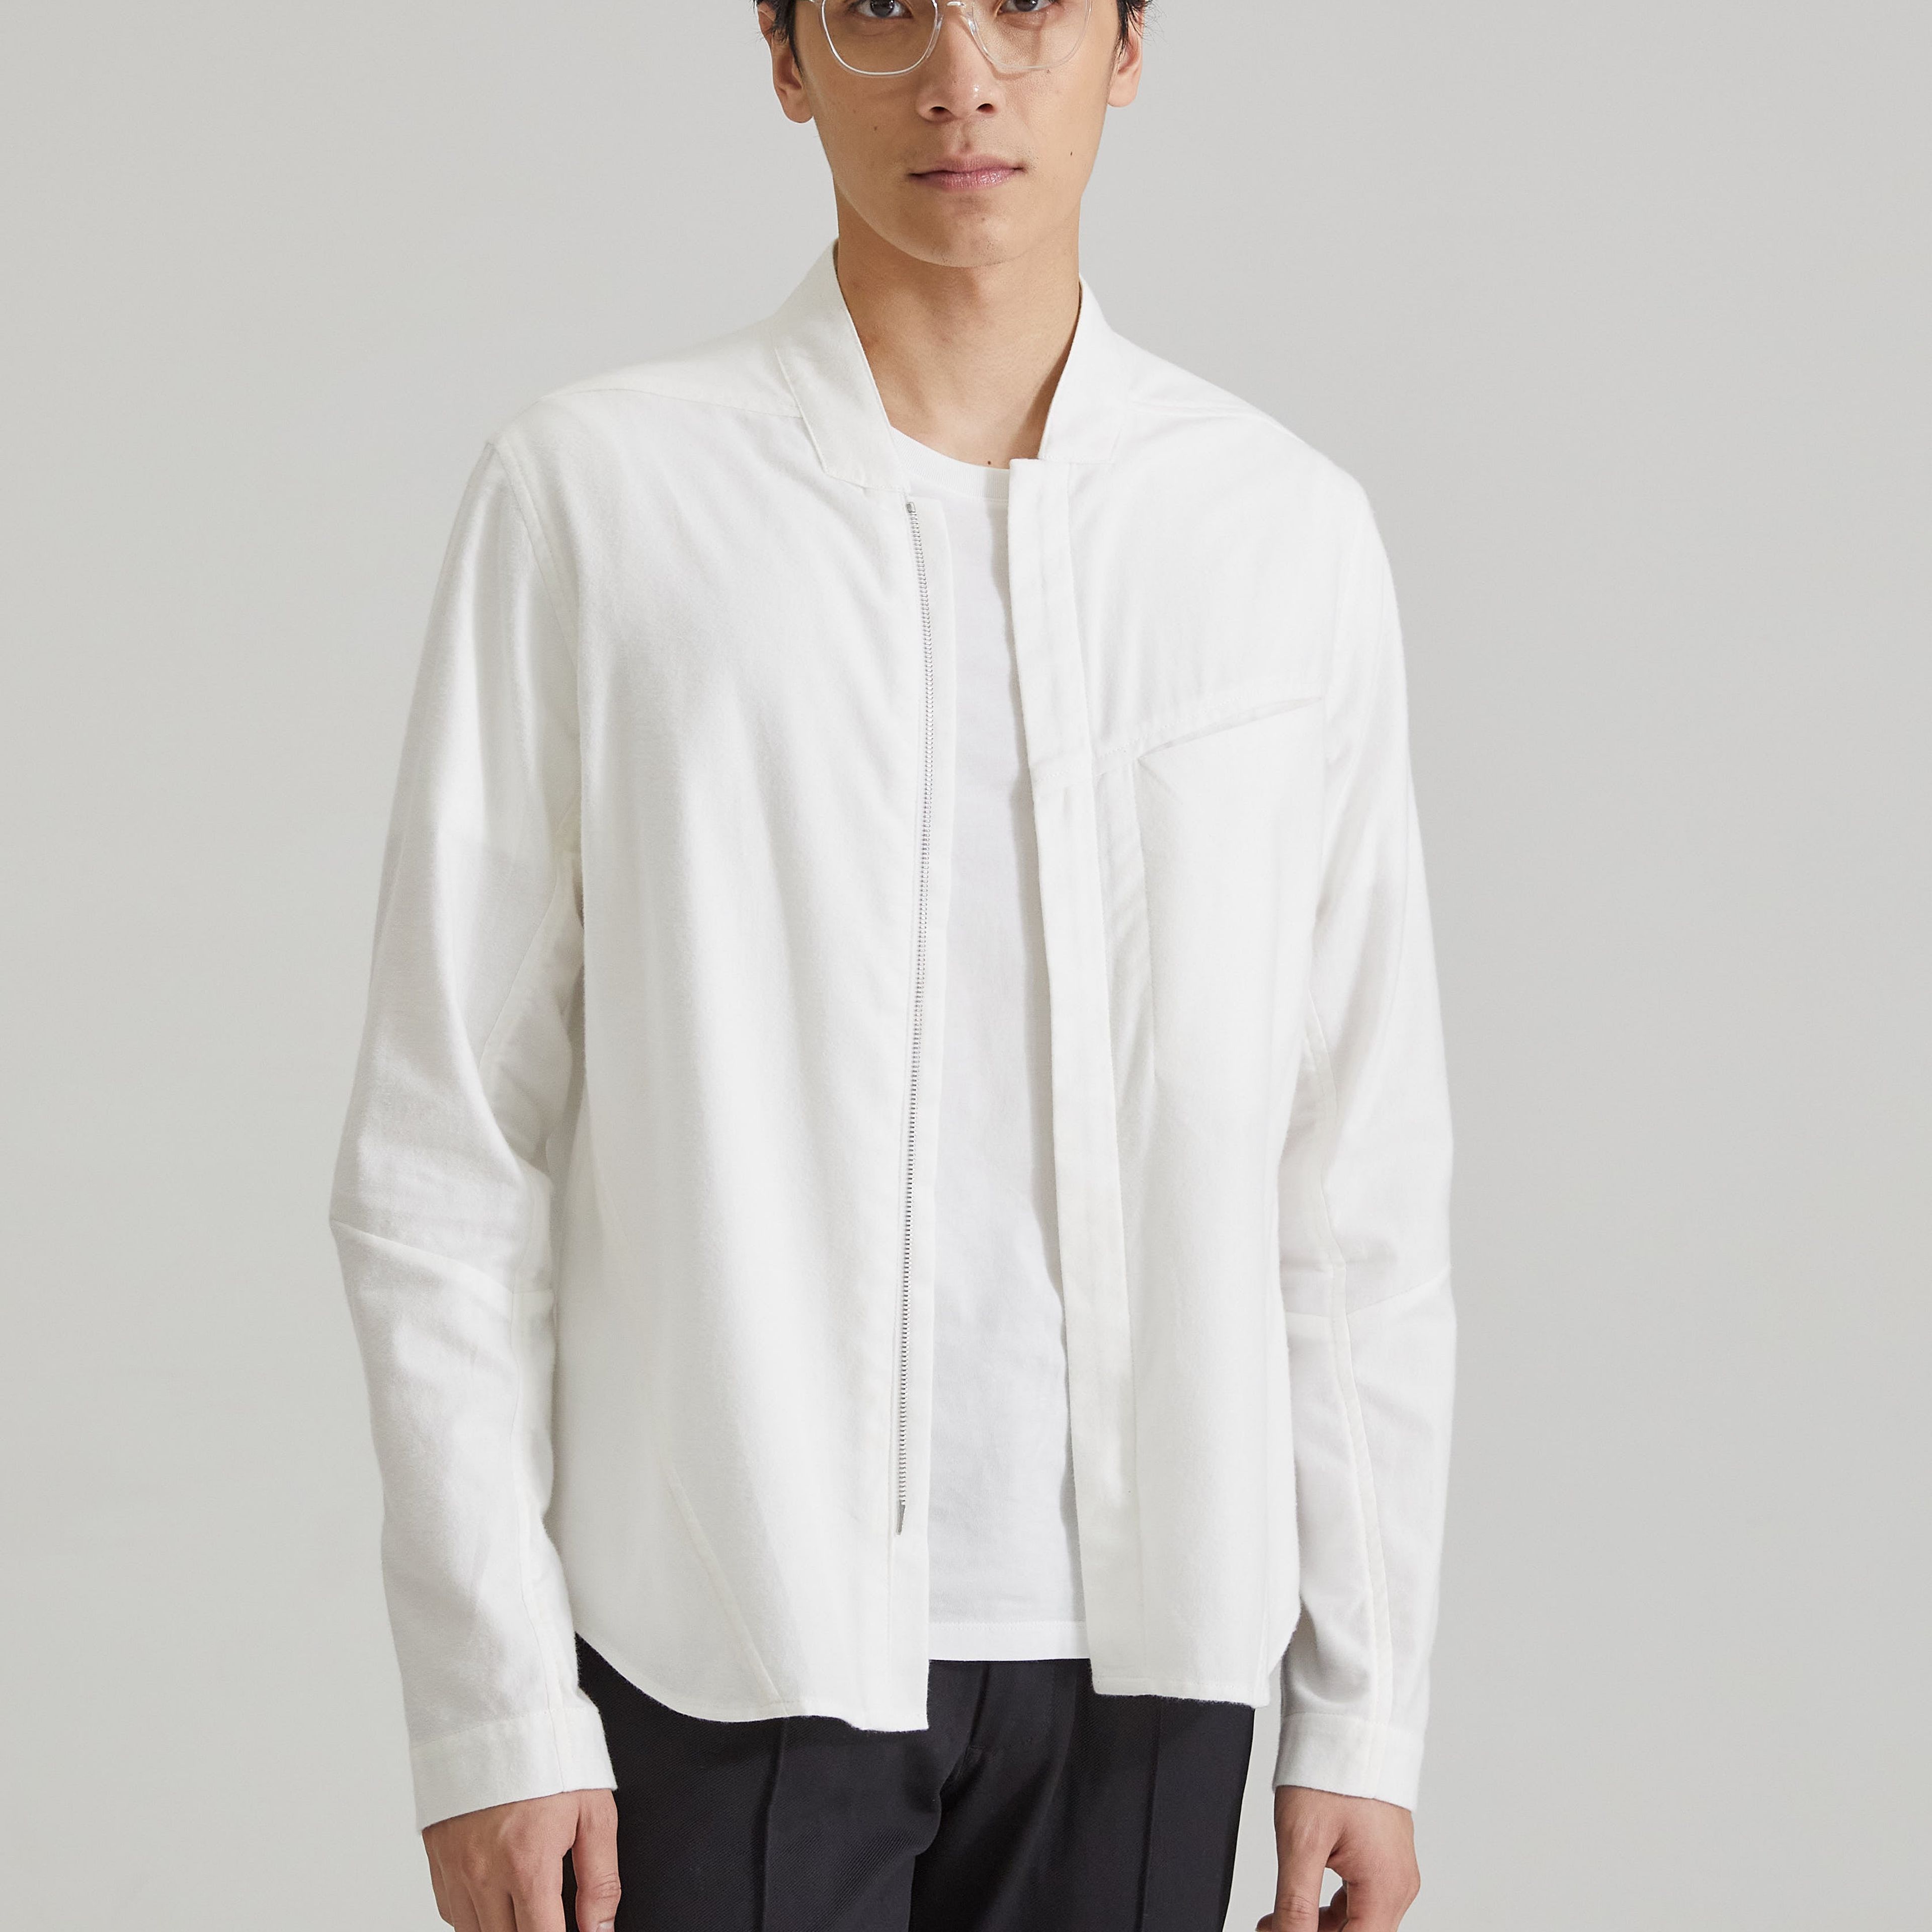 Modena Shirt / White Flannel